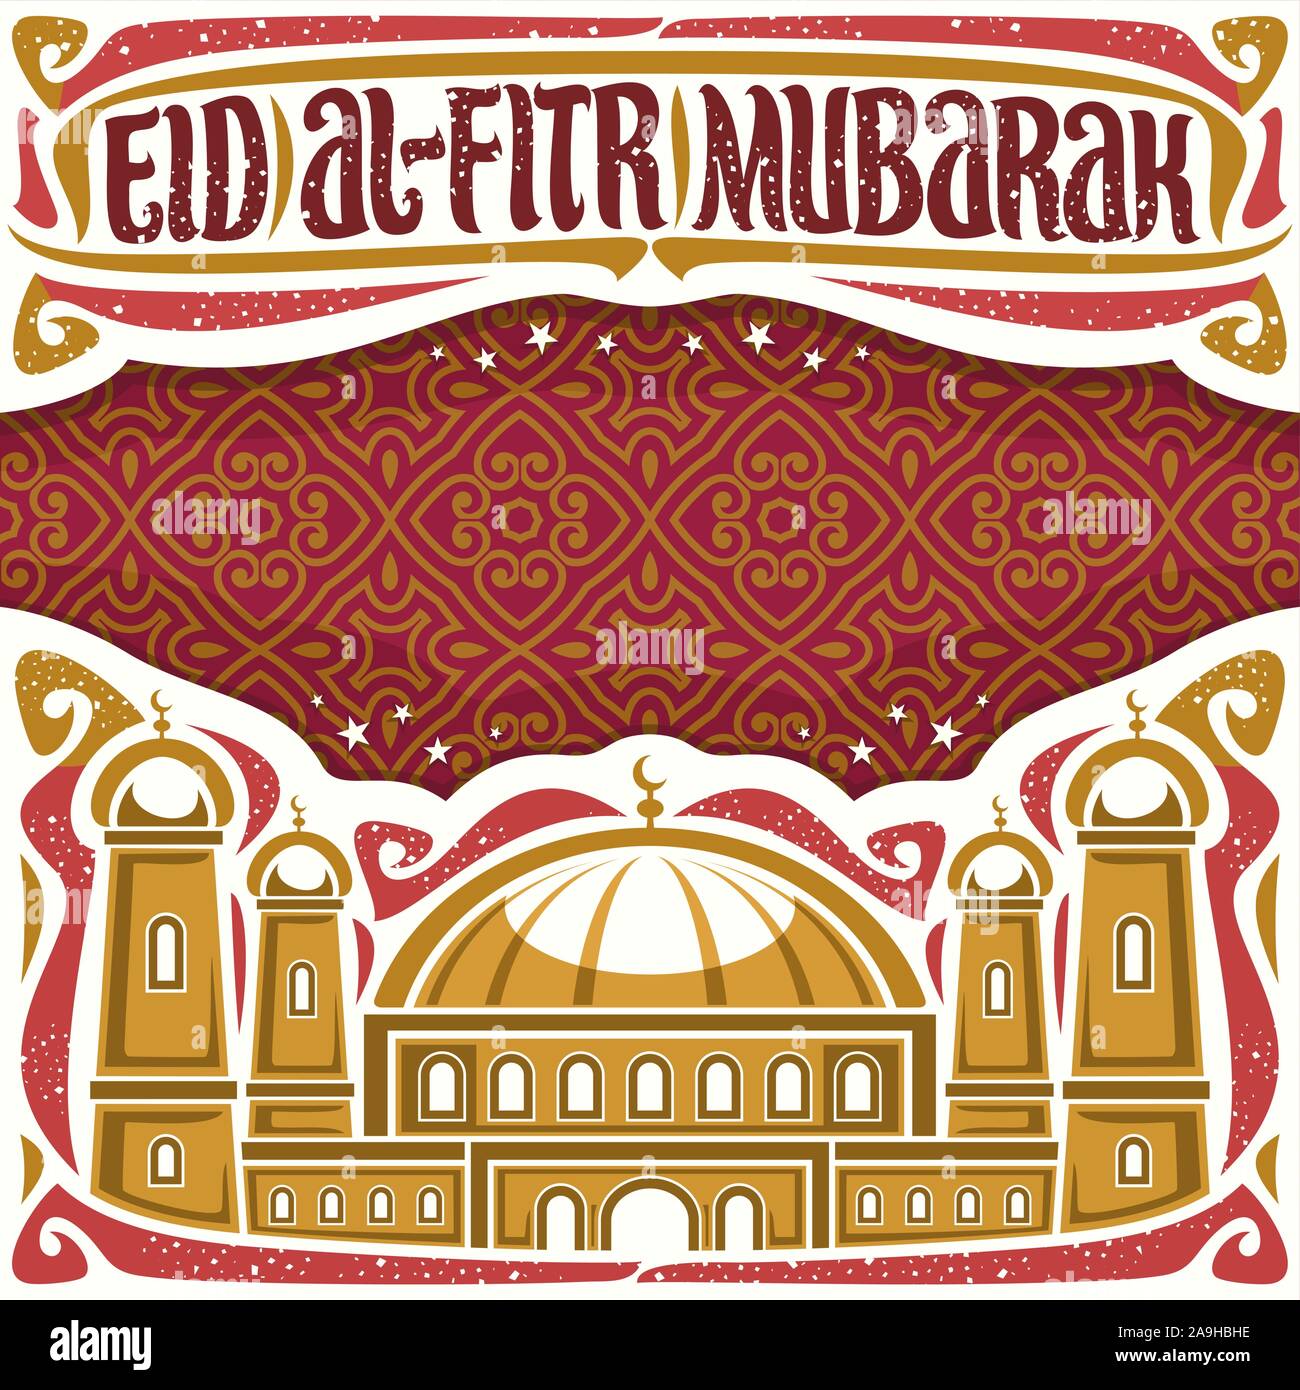 Vektor Plakat für Urlaub, ebenso wie das Eid al-Adha mit Kopie Raum, Schlagzeile mit gedeiht, kalligraphische Schrift für Worte Eid al Fitr Mubarak, Abbildung: mosq Stock Vektor